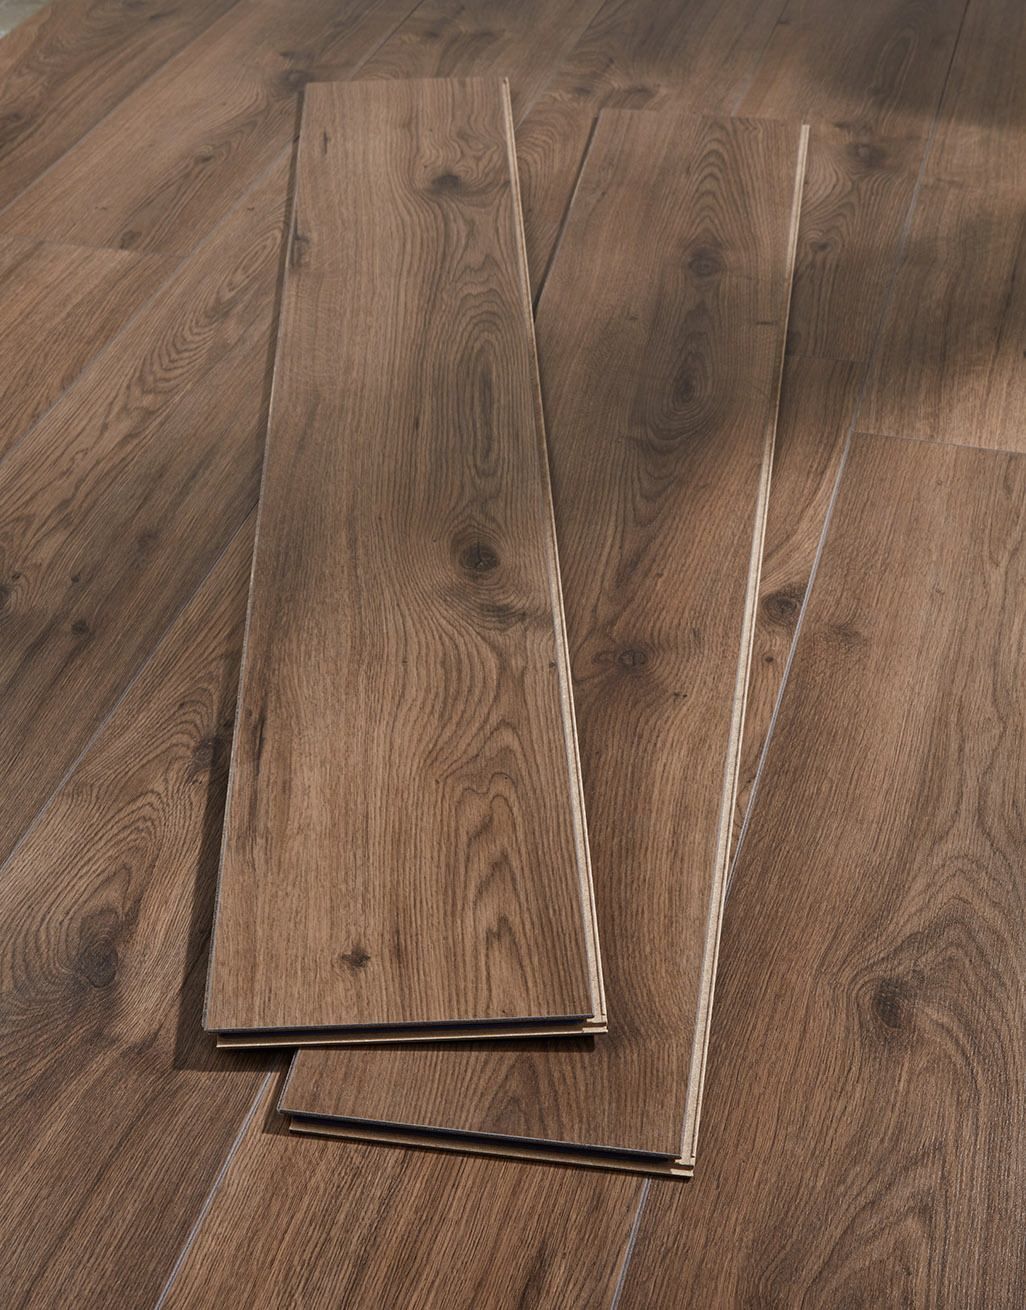 Textured laminate flooring